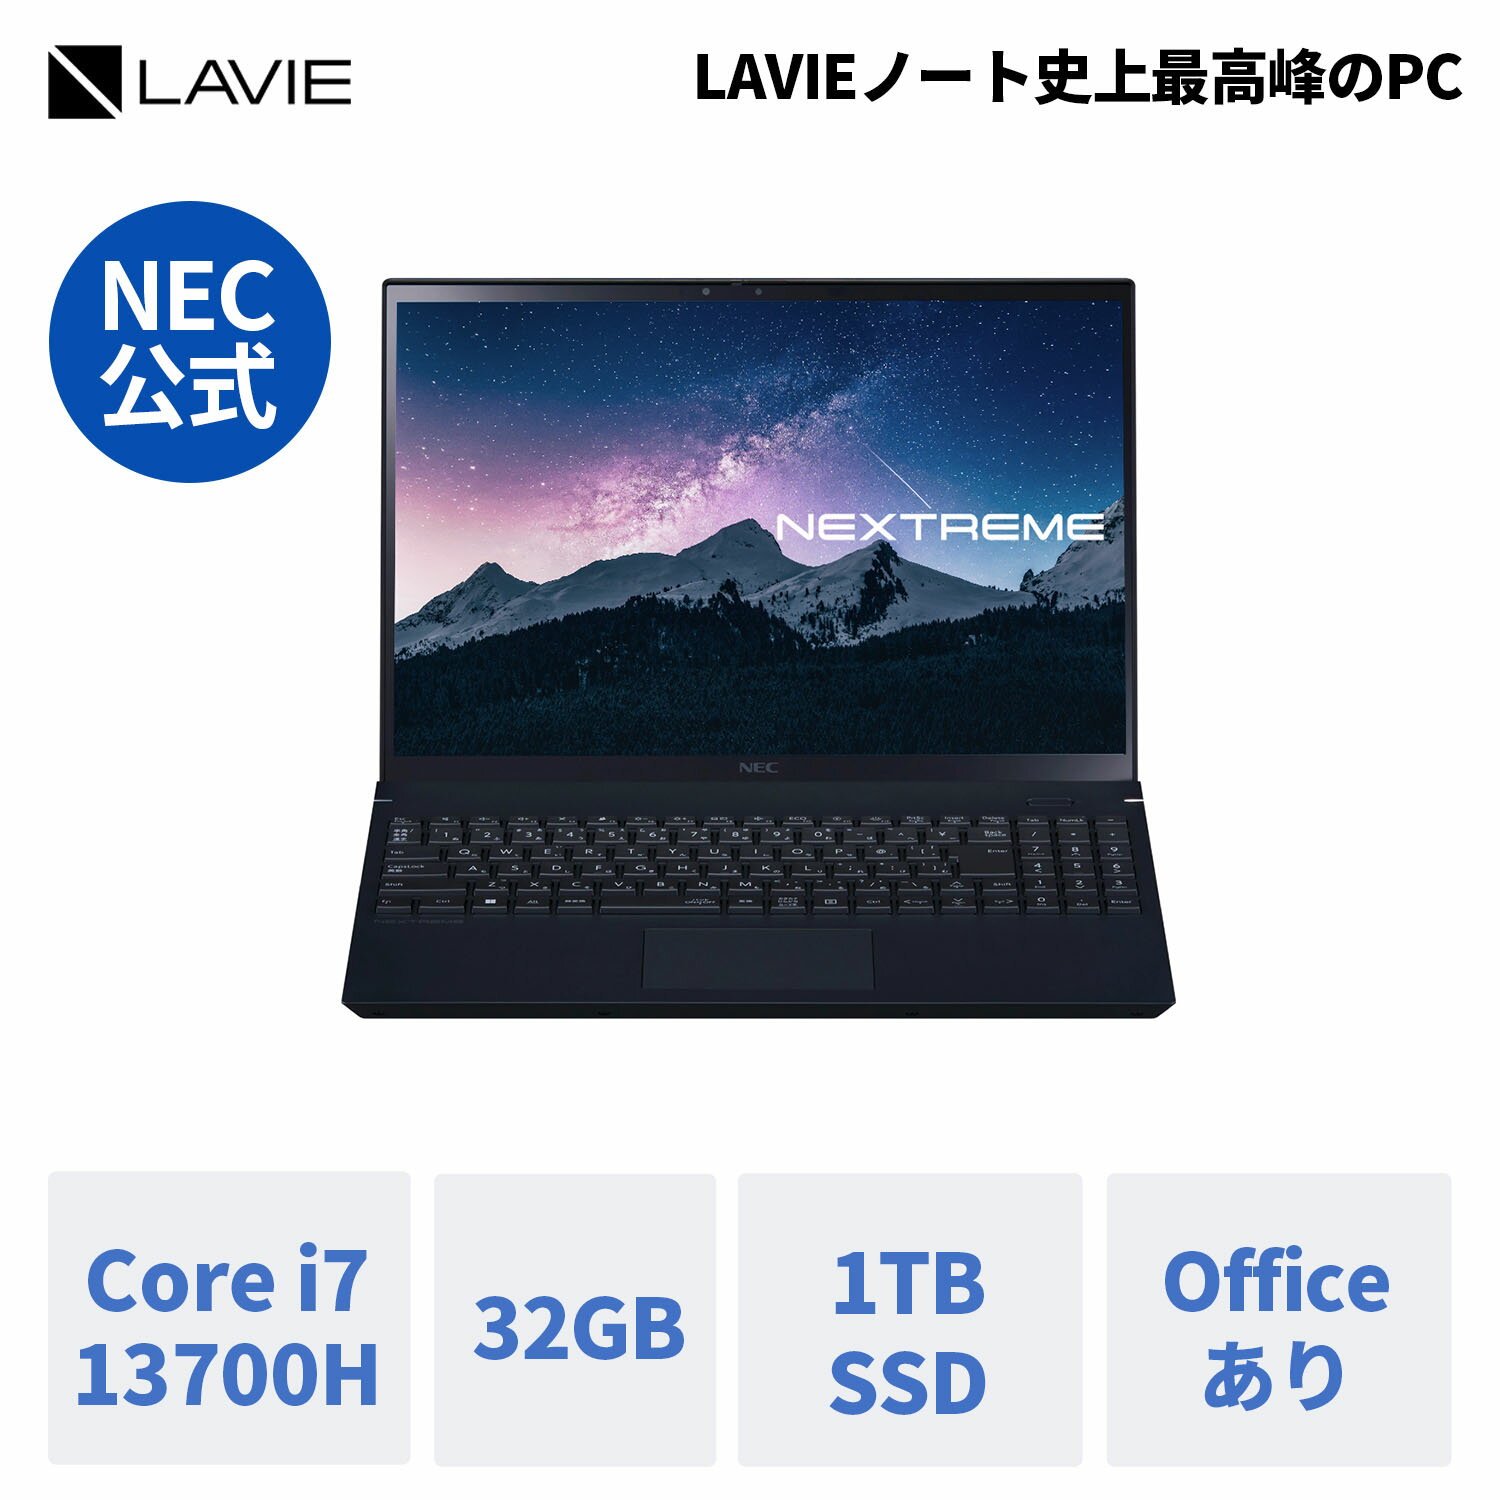  新品 NEC ノートパソコン office付き LAVIE NEXTREME Infinity 16.0インチ Windows 11 Home Core i7メモリ 32GB 1TB SSD 1年保証 送料無料 yxe